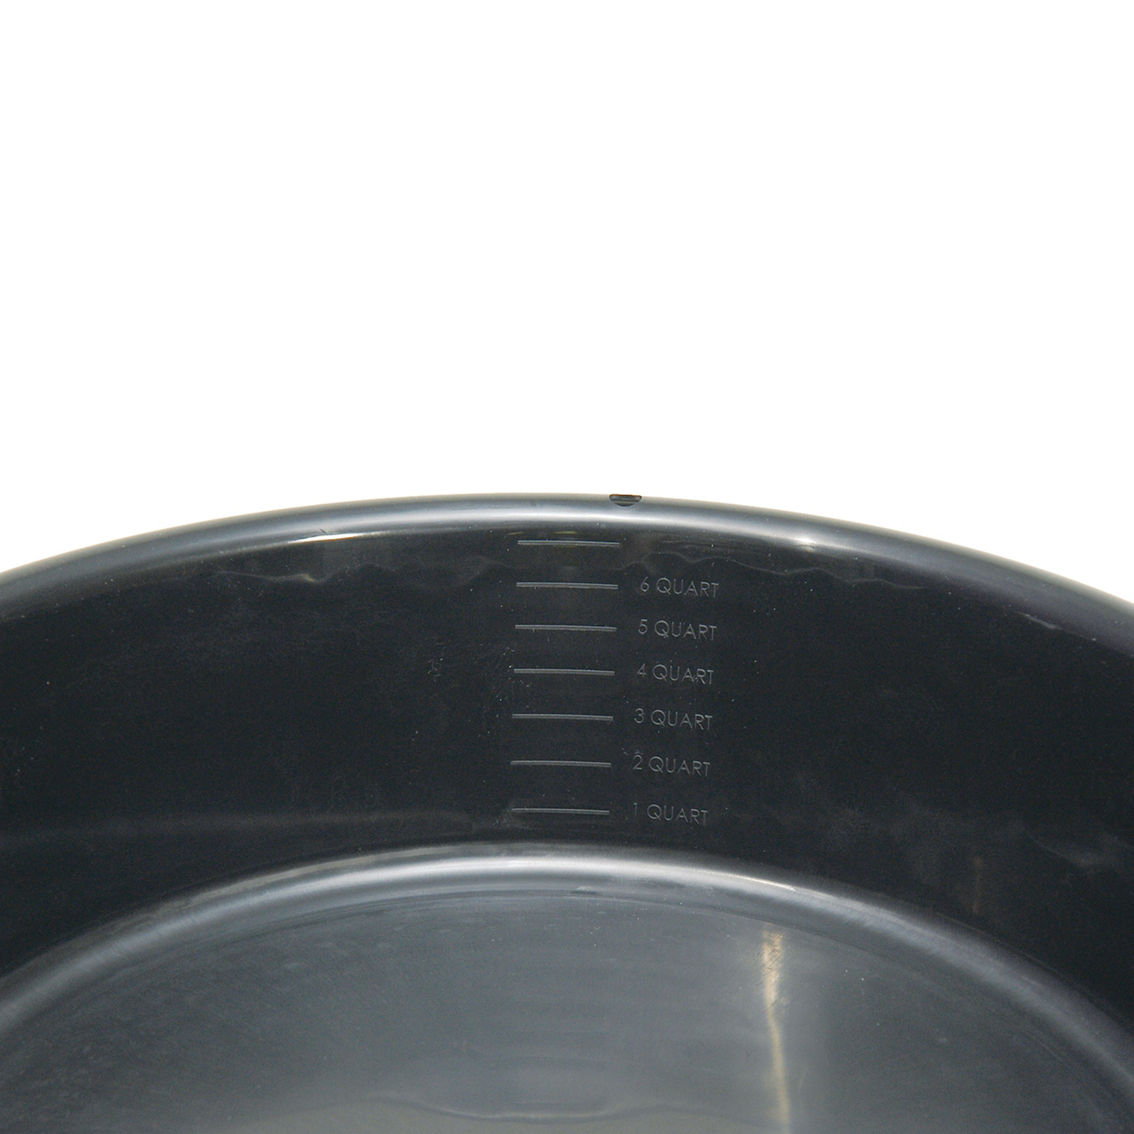 Hopkins FloTool 7 Quart Oil Drain Pan - Image 4 of 5